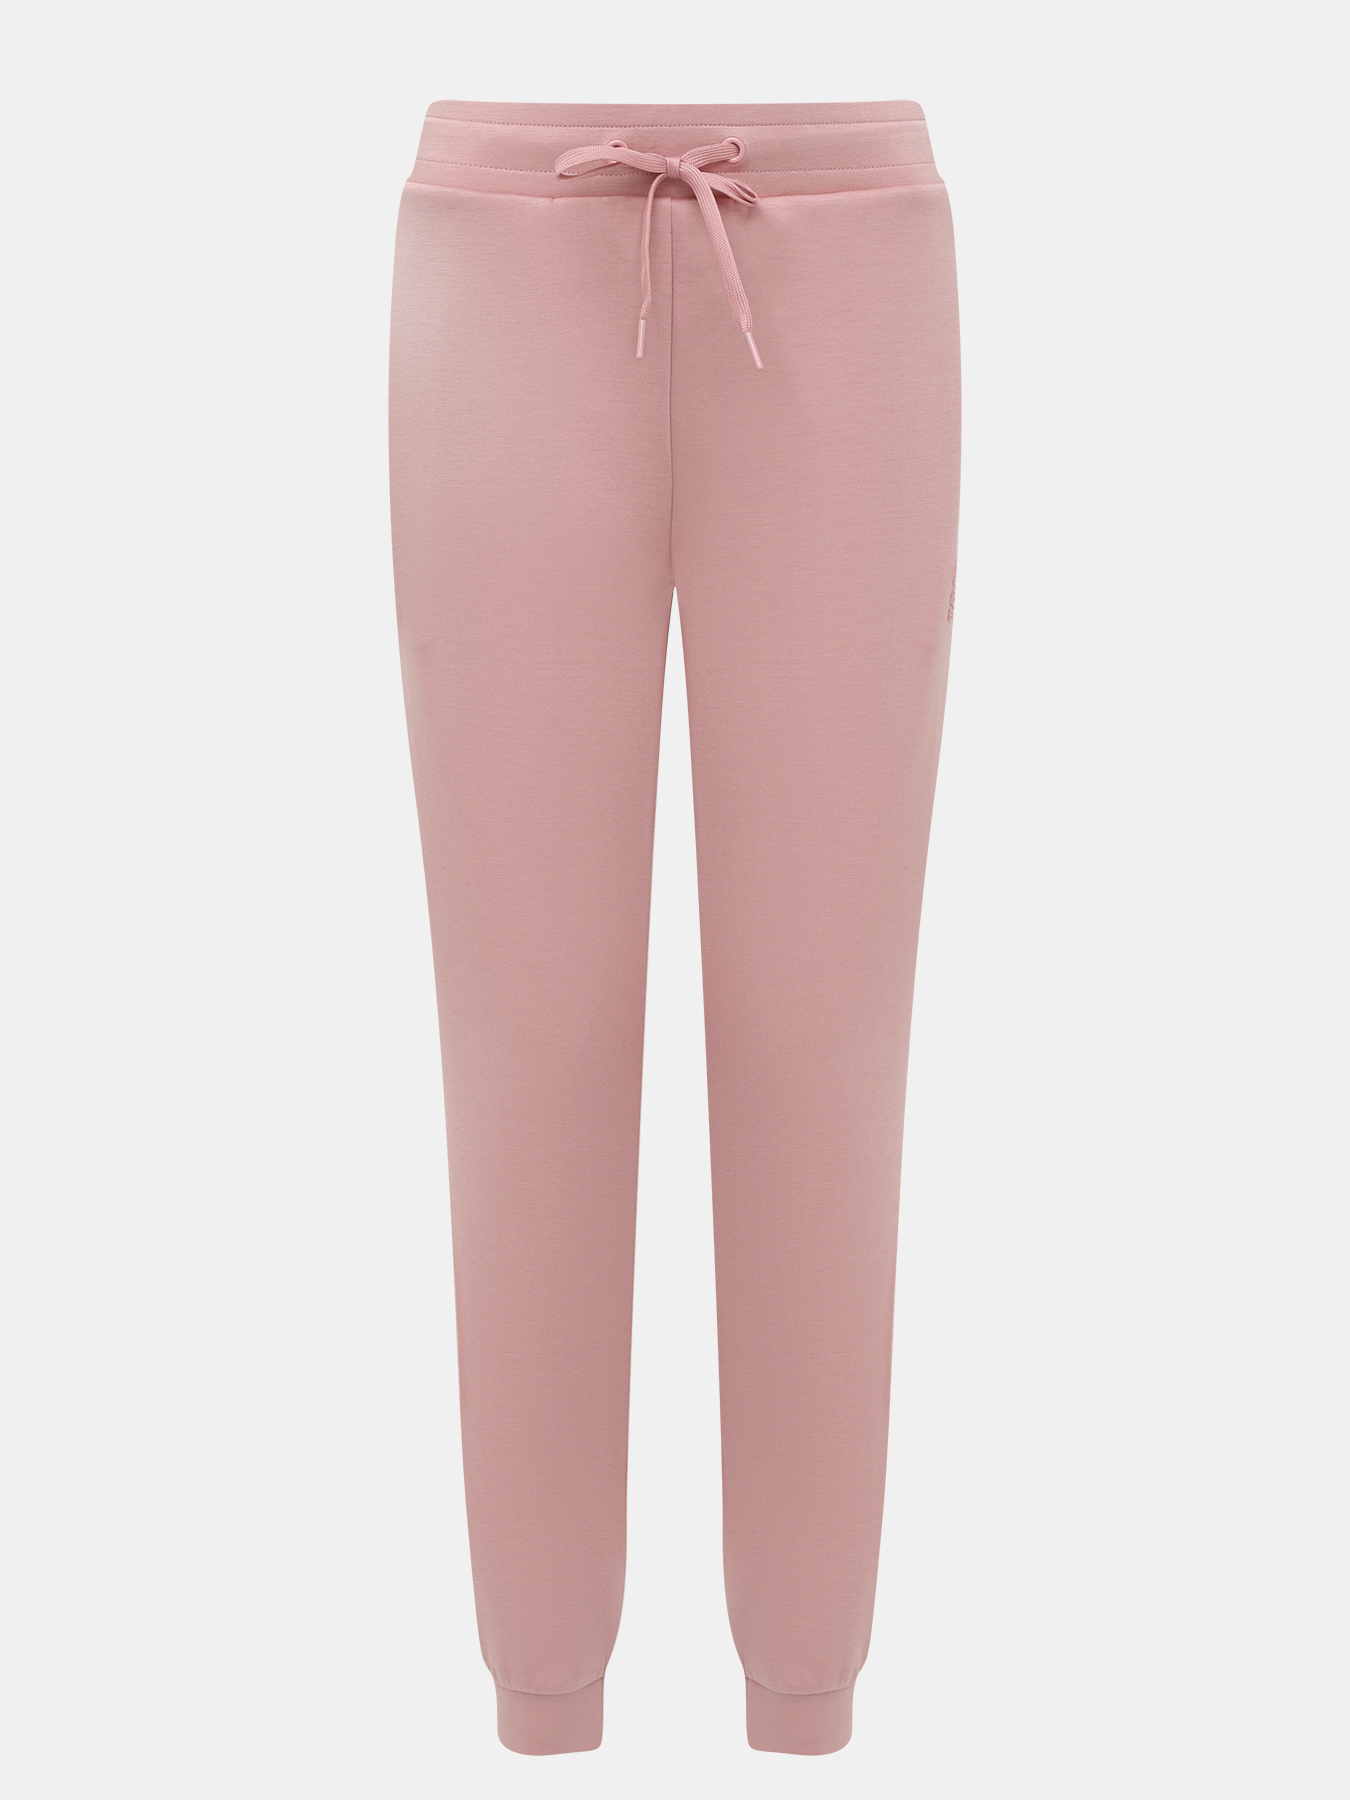 Спортивные брюки женские Orsa Orange 450552 розовые 48 RU